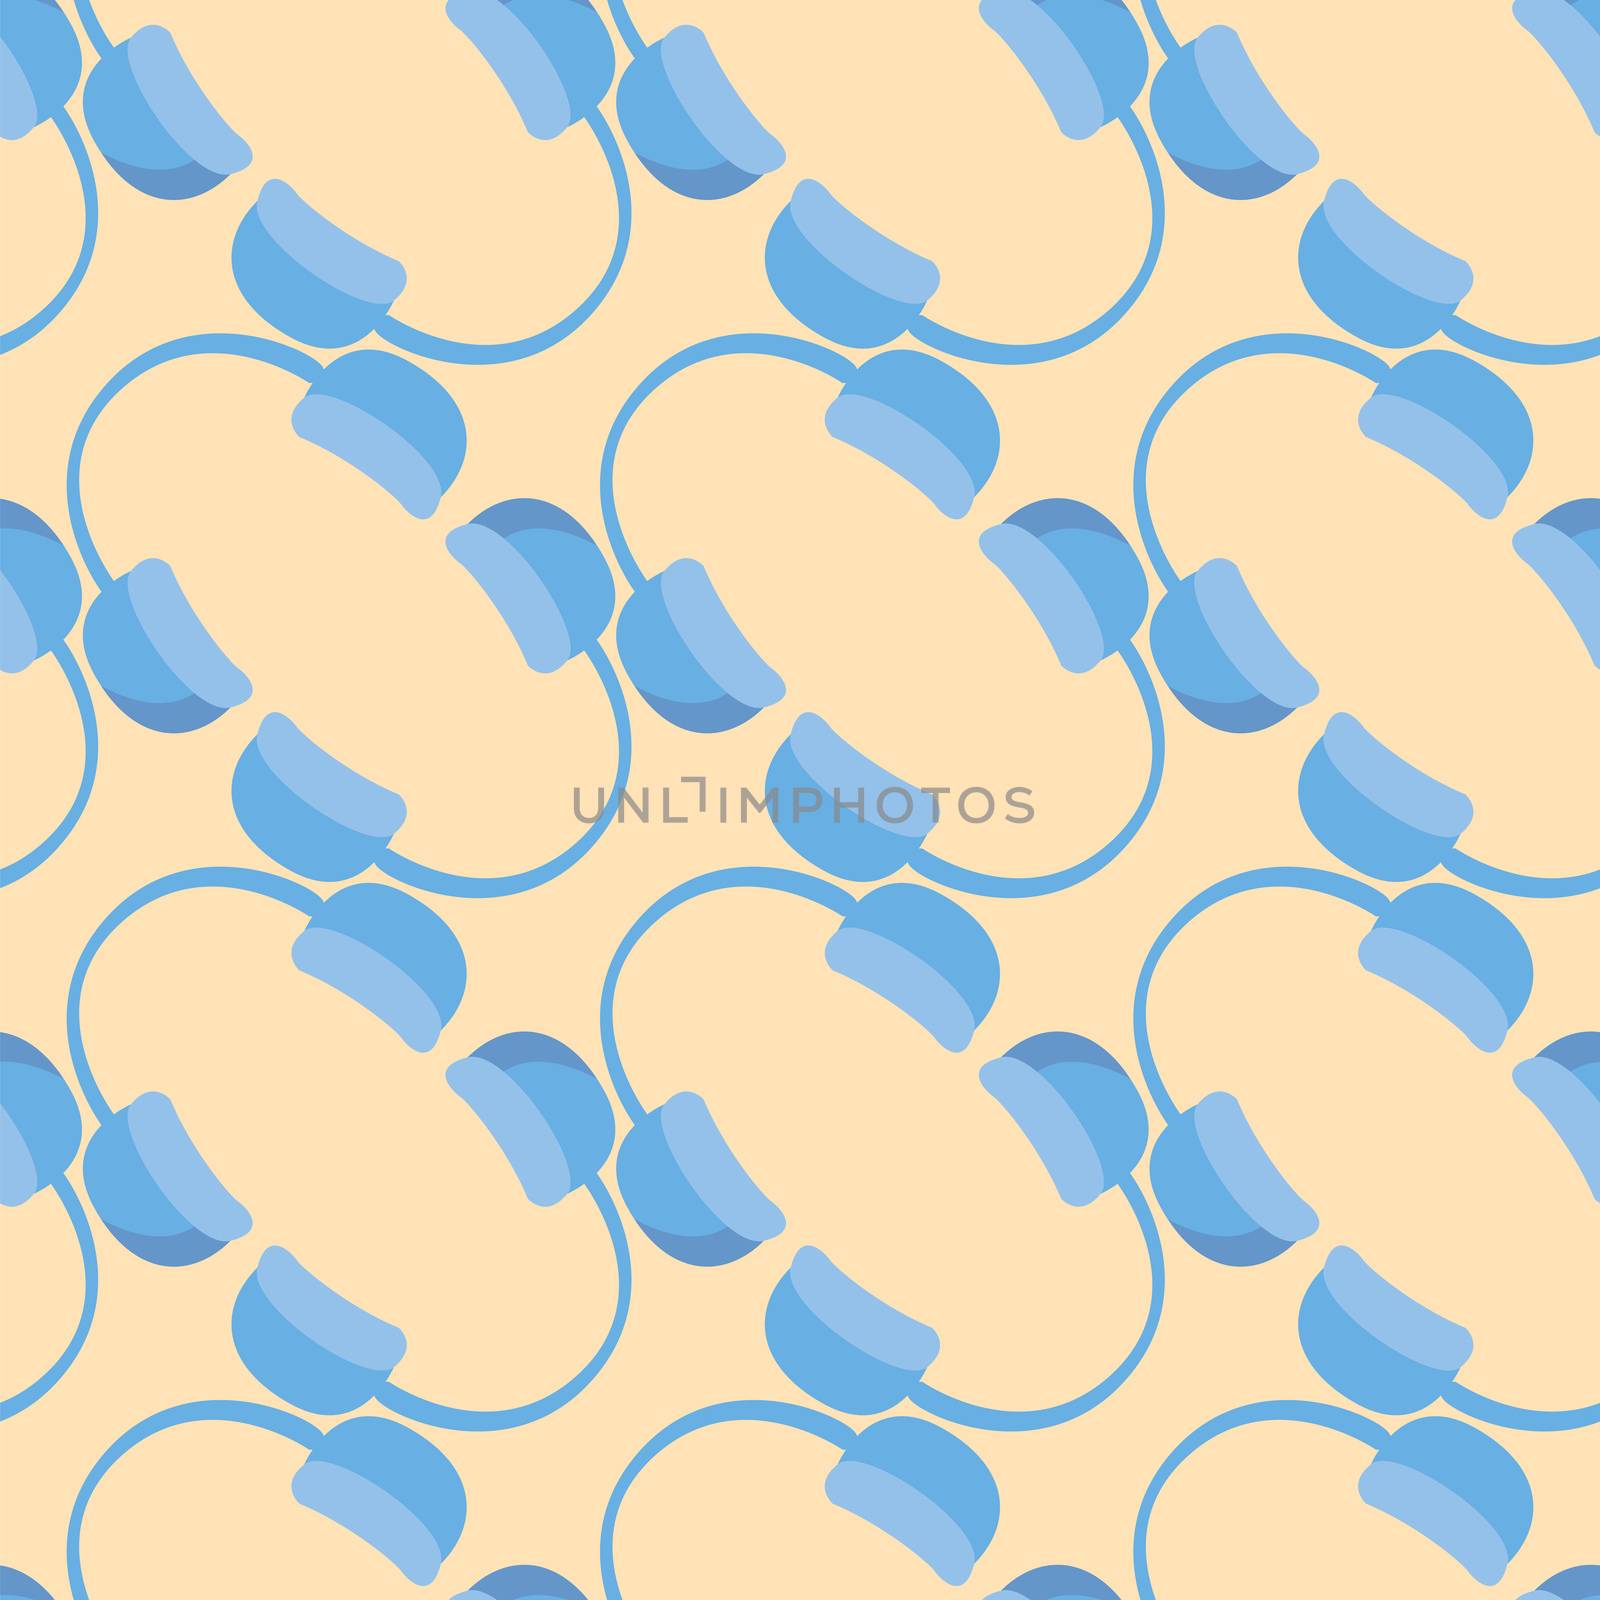 Earphones pattern , illustration, vector on white background